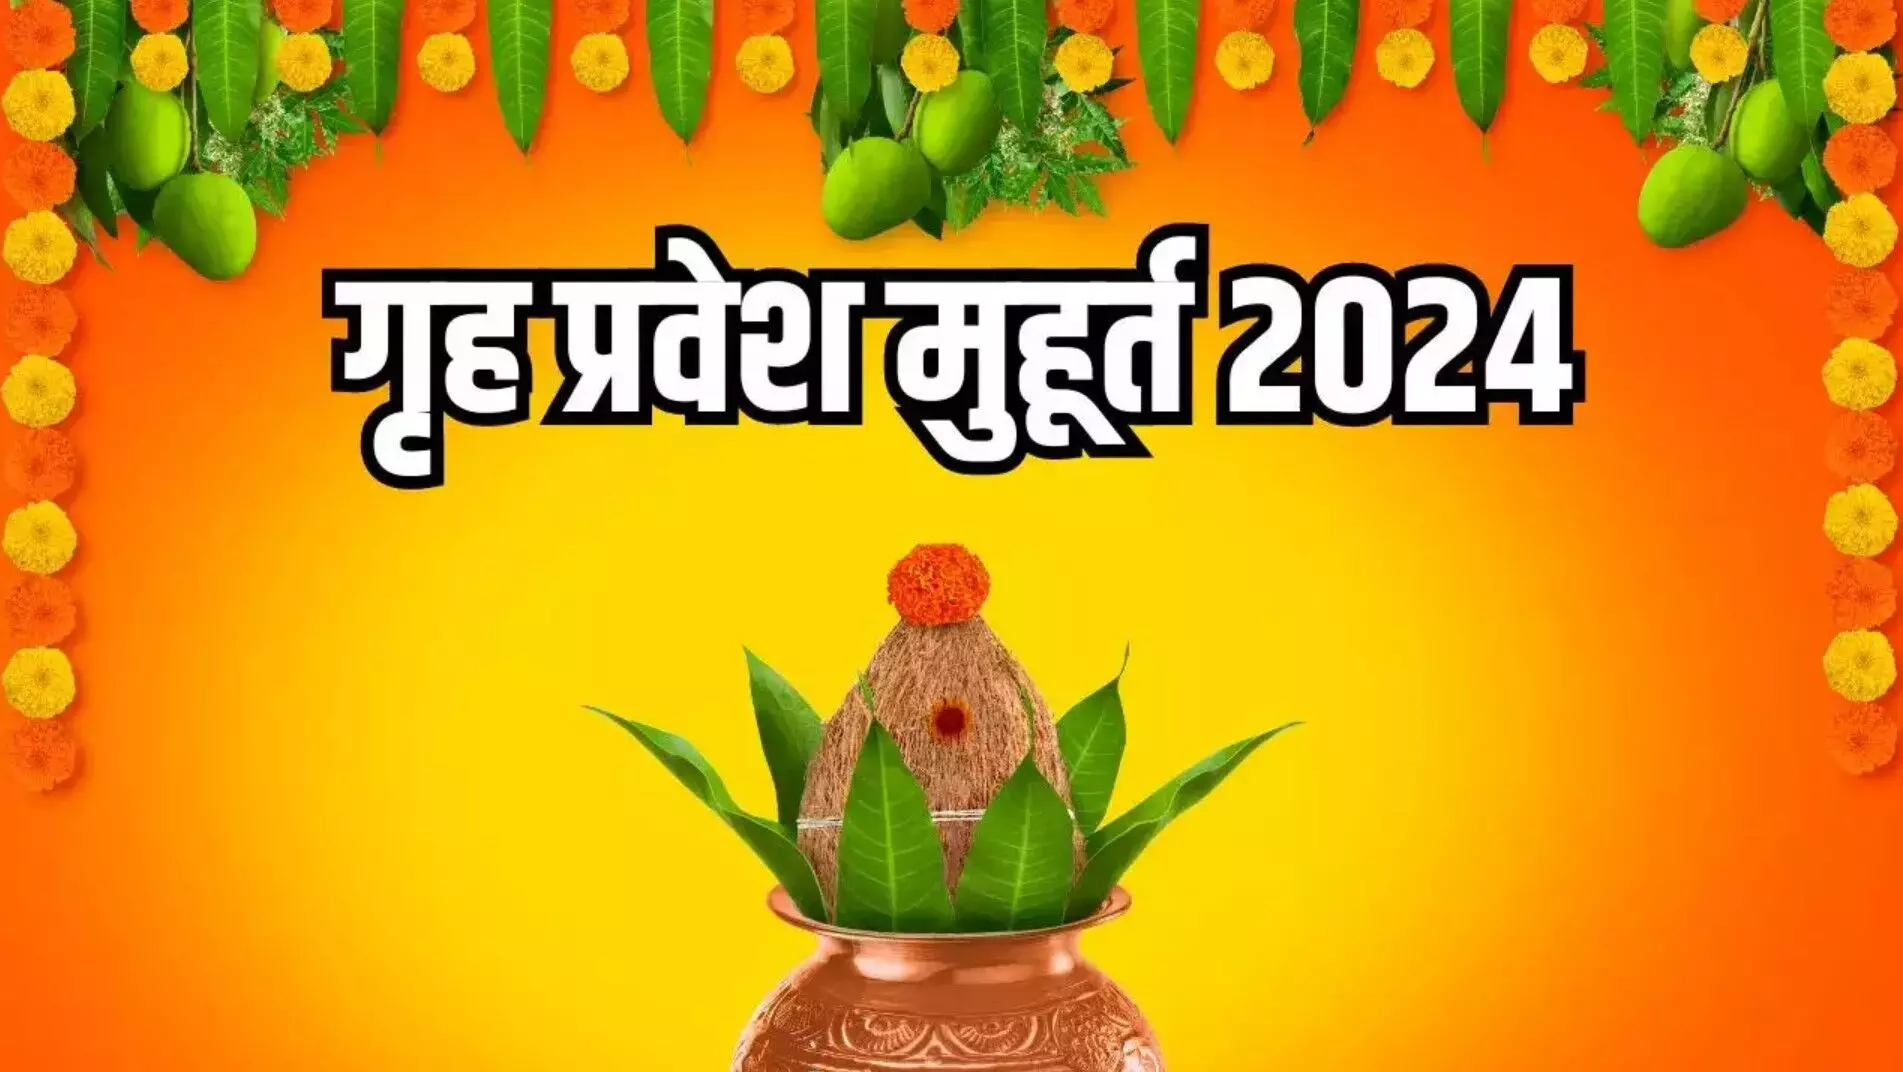 Griha Pravesh Muhurat 2022: गृह-प्रवेश के लिए शुभ-मुहूर्त क्यों देखते हैं? जानें साल 2022 में कब-कब गृह प्रवेश के शुभ मुहूर्त बन रहे हैं?